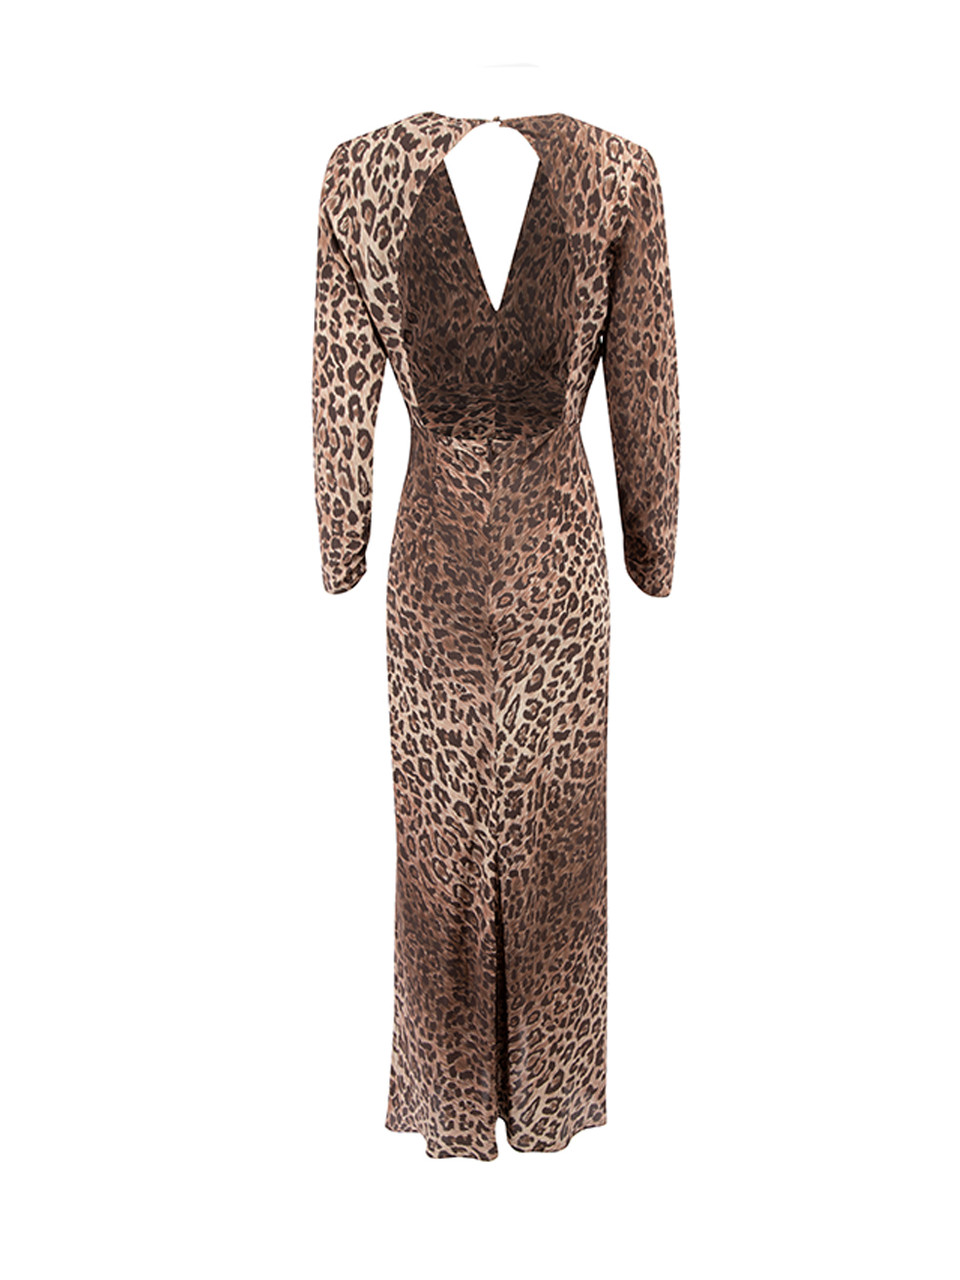 Rixo Brown Leopard Print Ruched Midi Dress